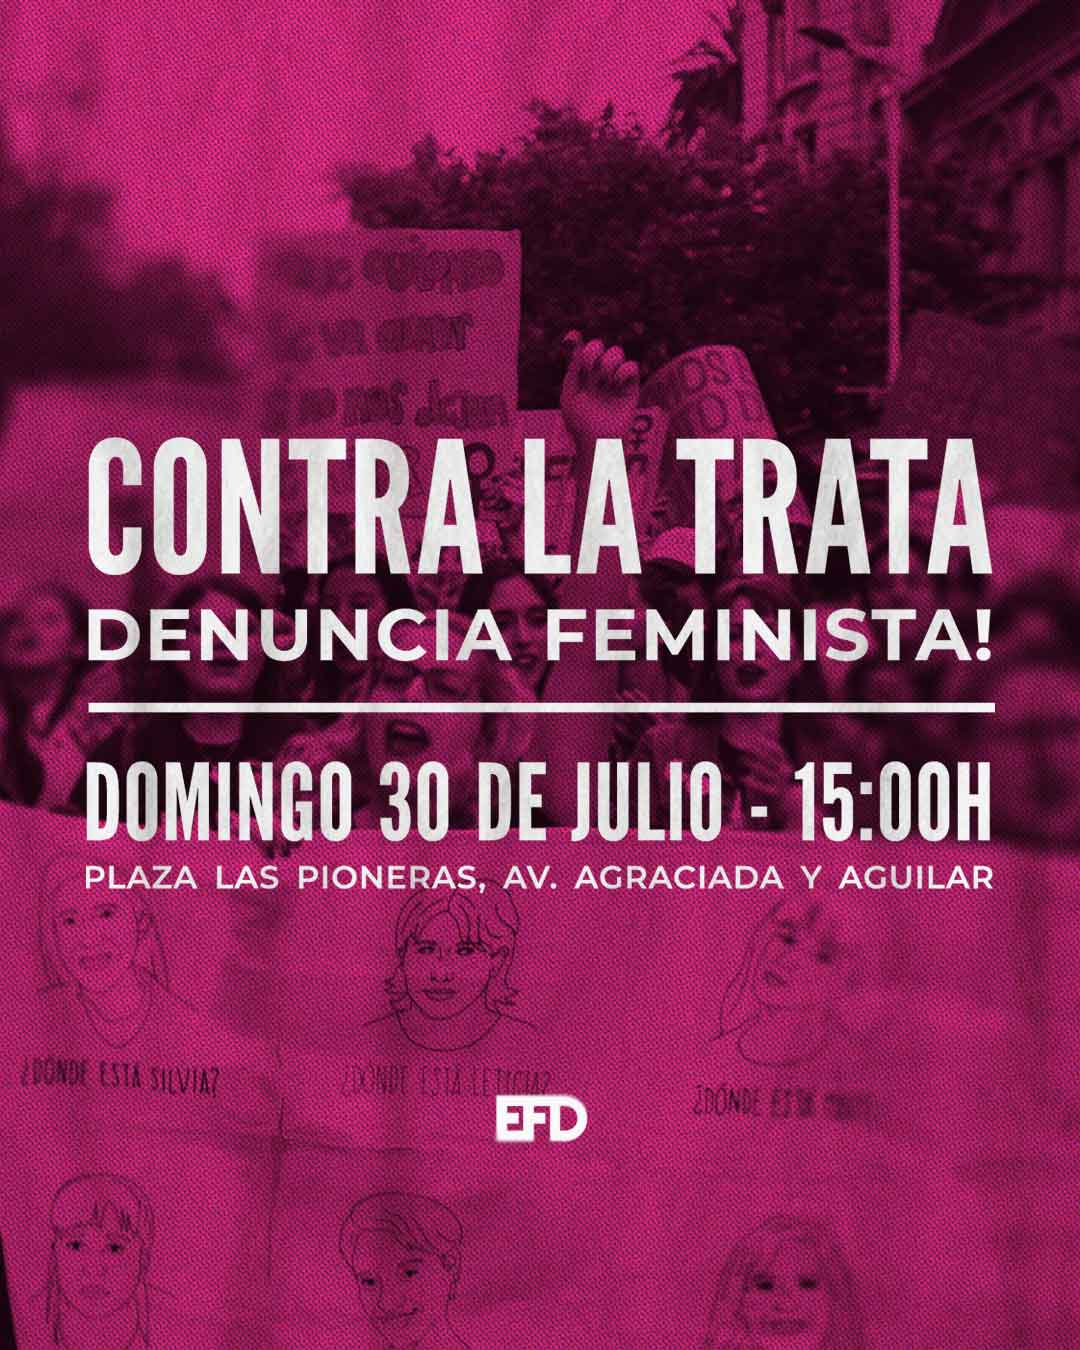 Contra la trata: Denuncia feminista!<br />
Domingo 30 de julio 15 horas Plaza las pioneras. Avenida Agraciada y Aguilar